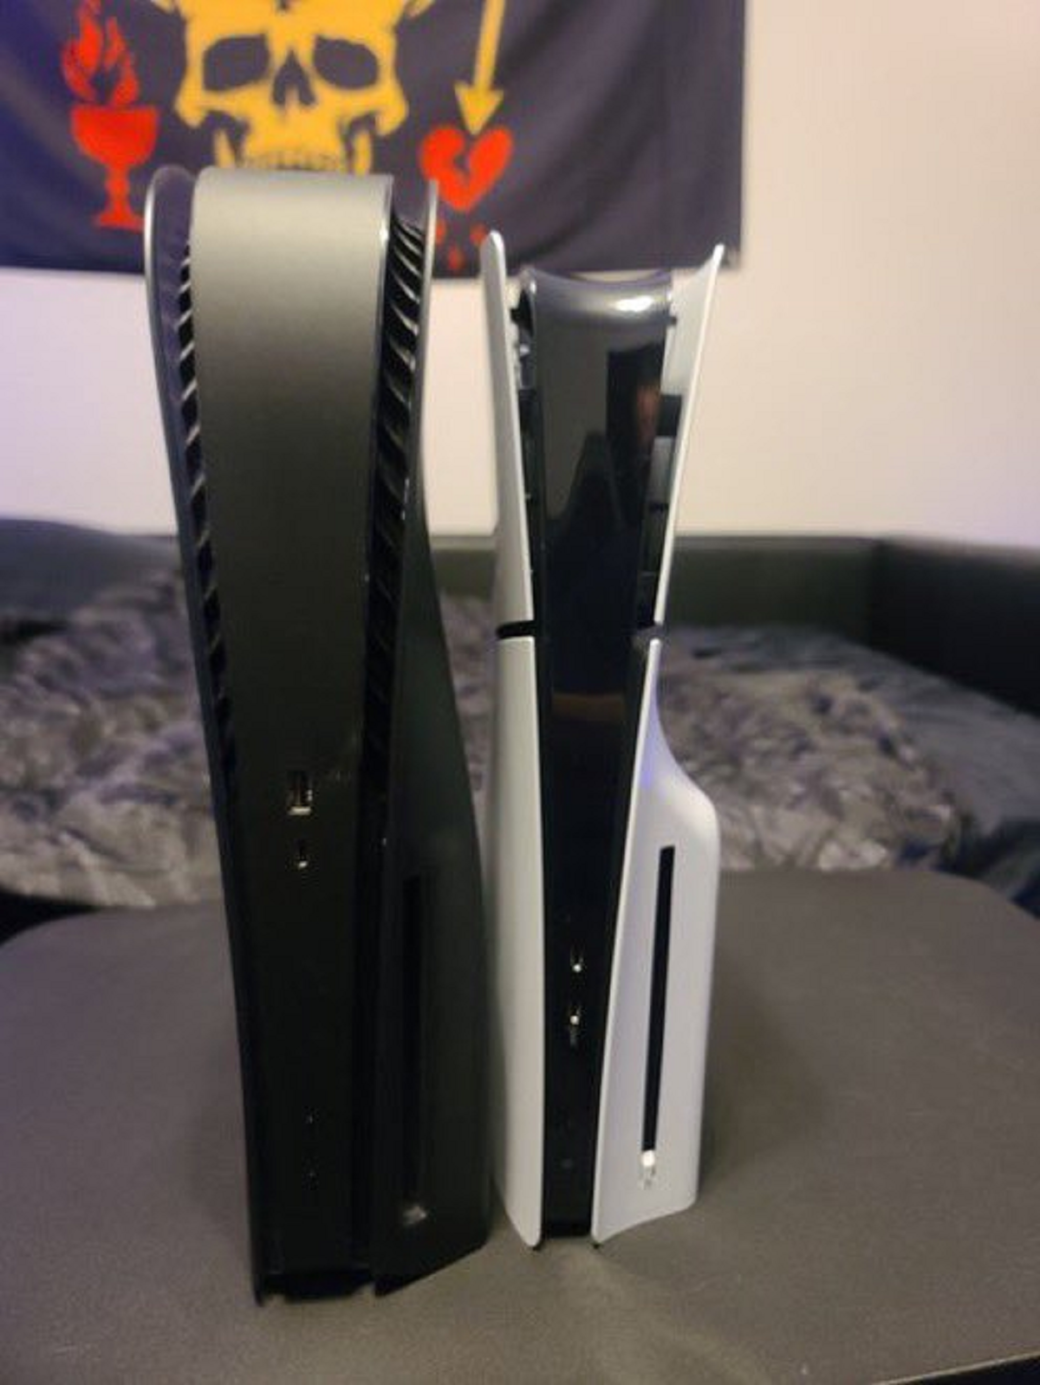 Галерея В сети появились свежие фото новой модели PlayStation 5 со съёмным дисководом - 6 фото